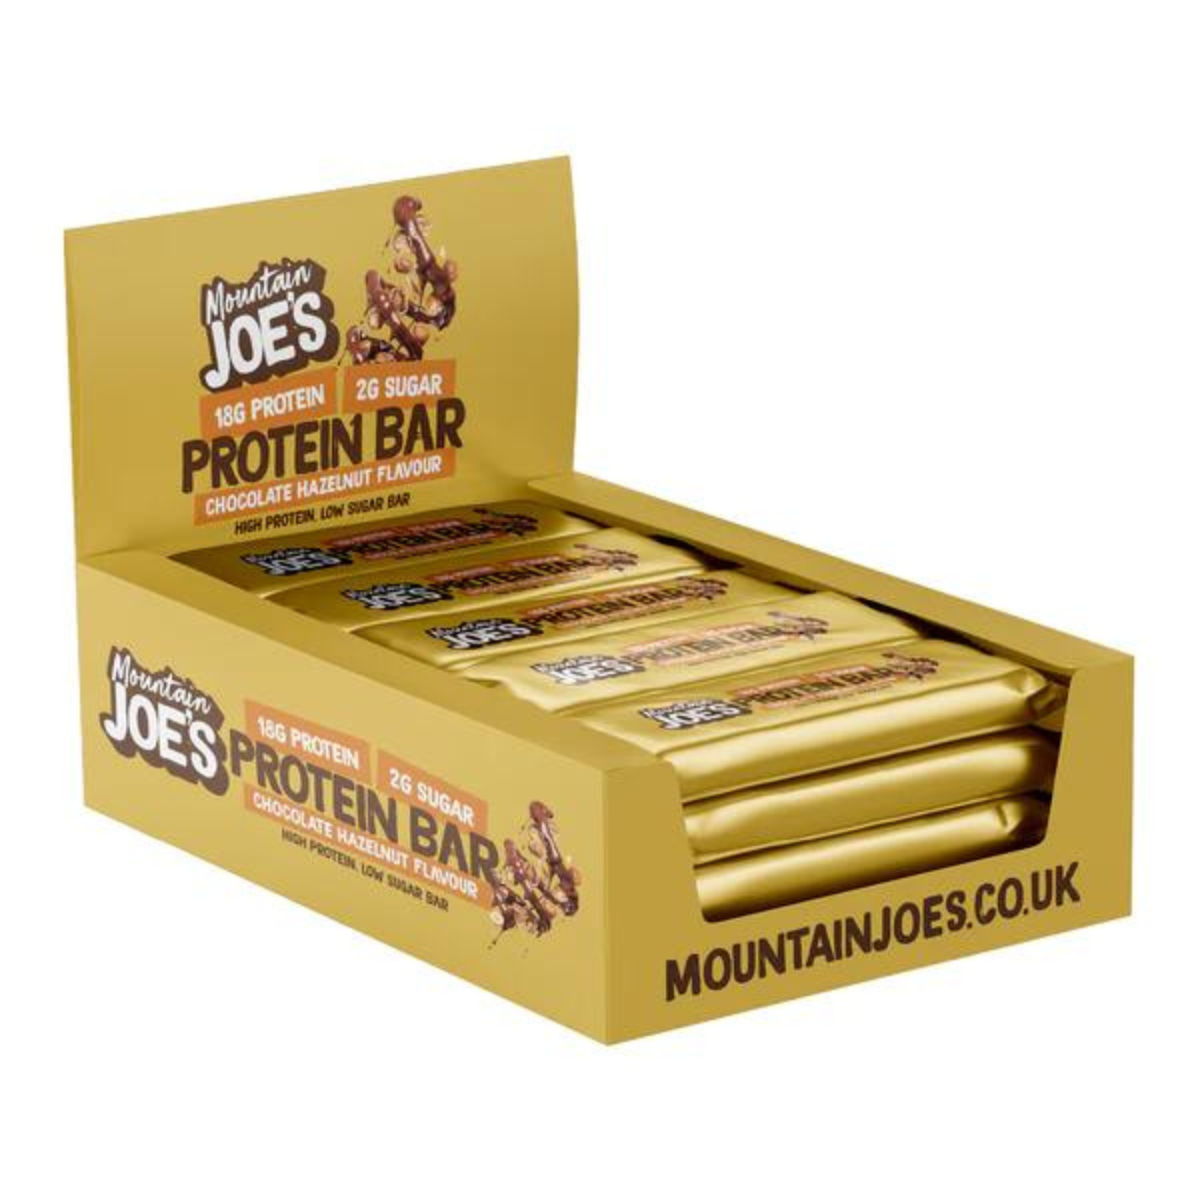 Mountain Joe's Protein Bars